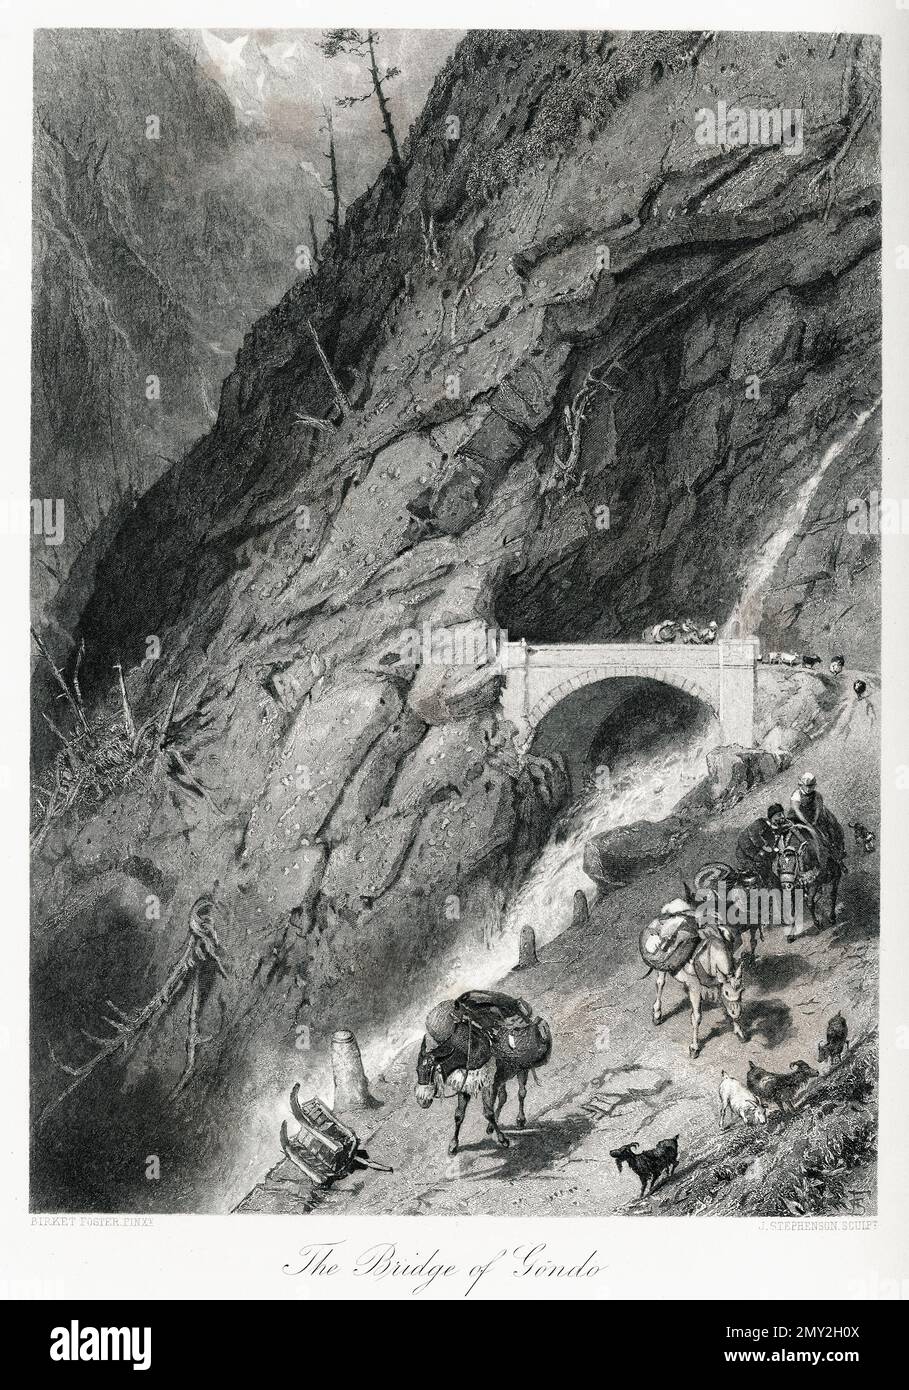 Antica illustrazione del ponte di Gondo nelle Alpi Pennine, Svizzera. Incisione pubblicata in picturesque Europe, Vol. V (Cassell & Company, li Foto Stock